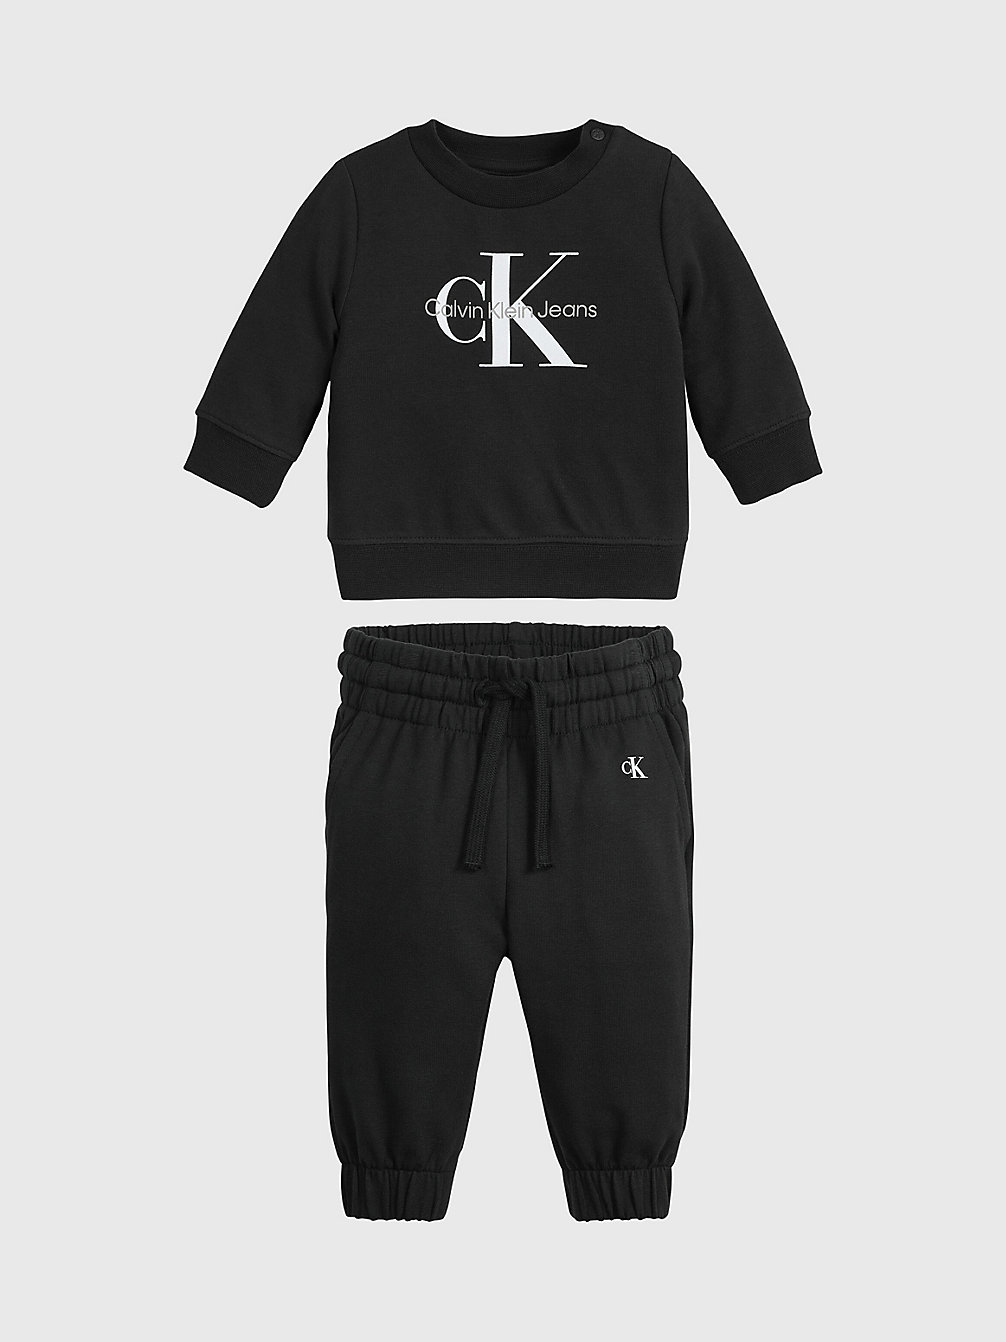 CK BLACK Survêtement Avec Logo Pour Nouveau-Né undefined newborn Calvin Klein